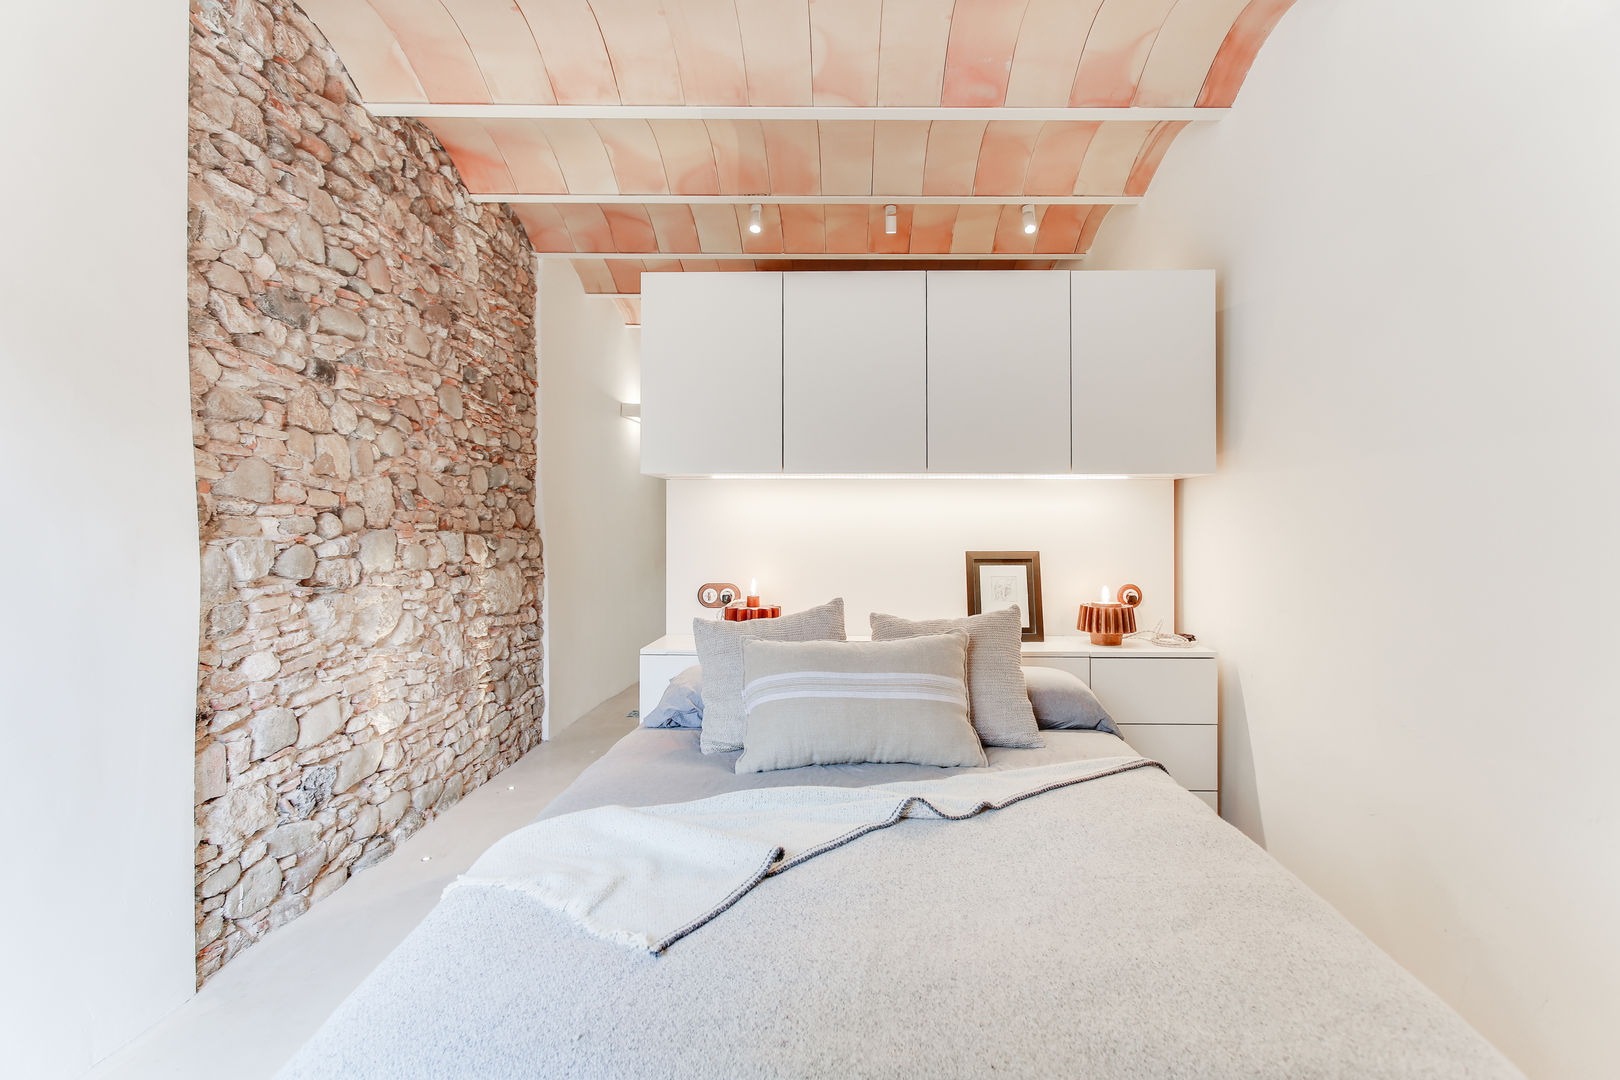 Casa de 3 niveles con rehabilitación integral para sus 140m2 , Lara Pujol | Interiorismo & Proyectos de diseño Lara Pujol | Interiorismo & Proyectos de diseño Dormitorios de estilo mediterráneo